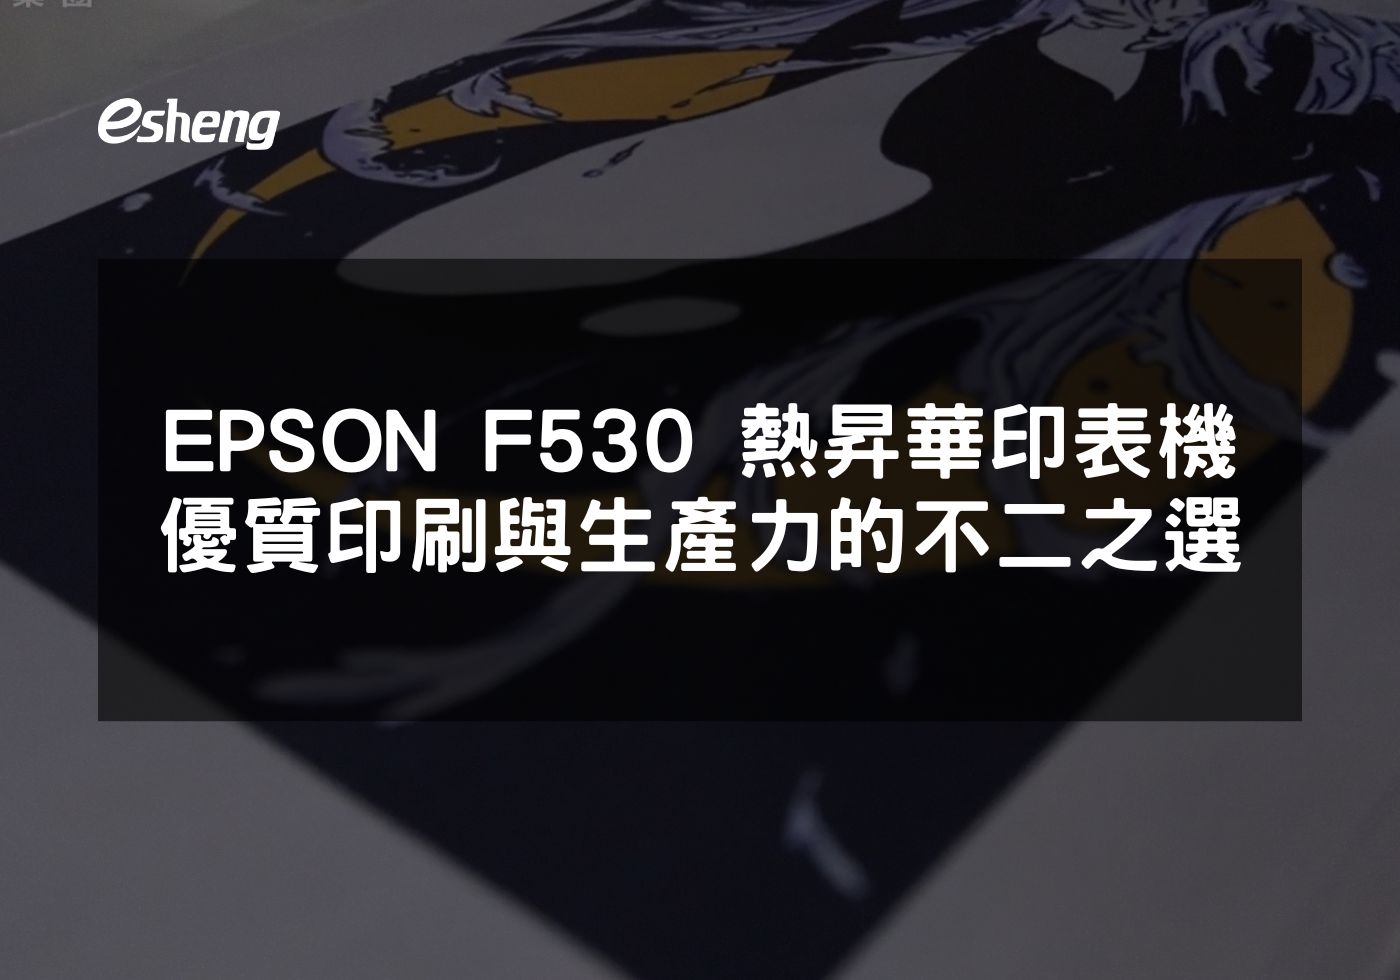 閱讀更多文章 EPSON F530 熱昇華印表機 優質印刷品質與高效生產力的不二之選